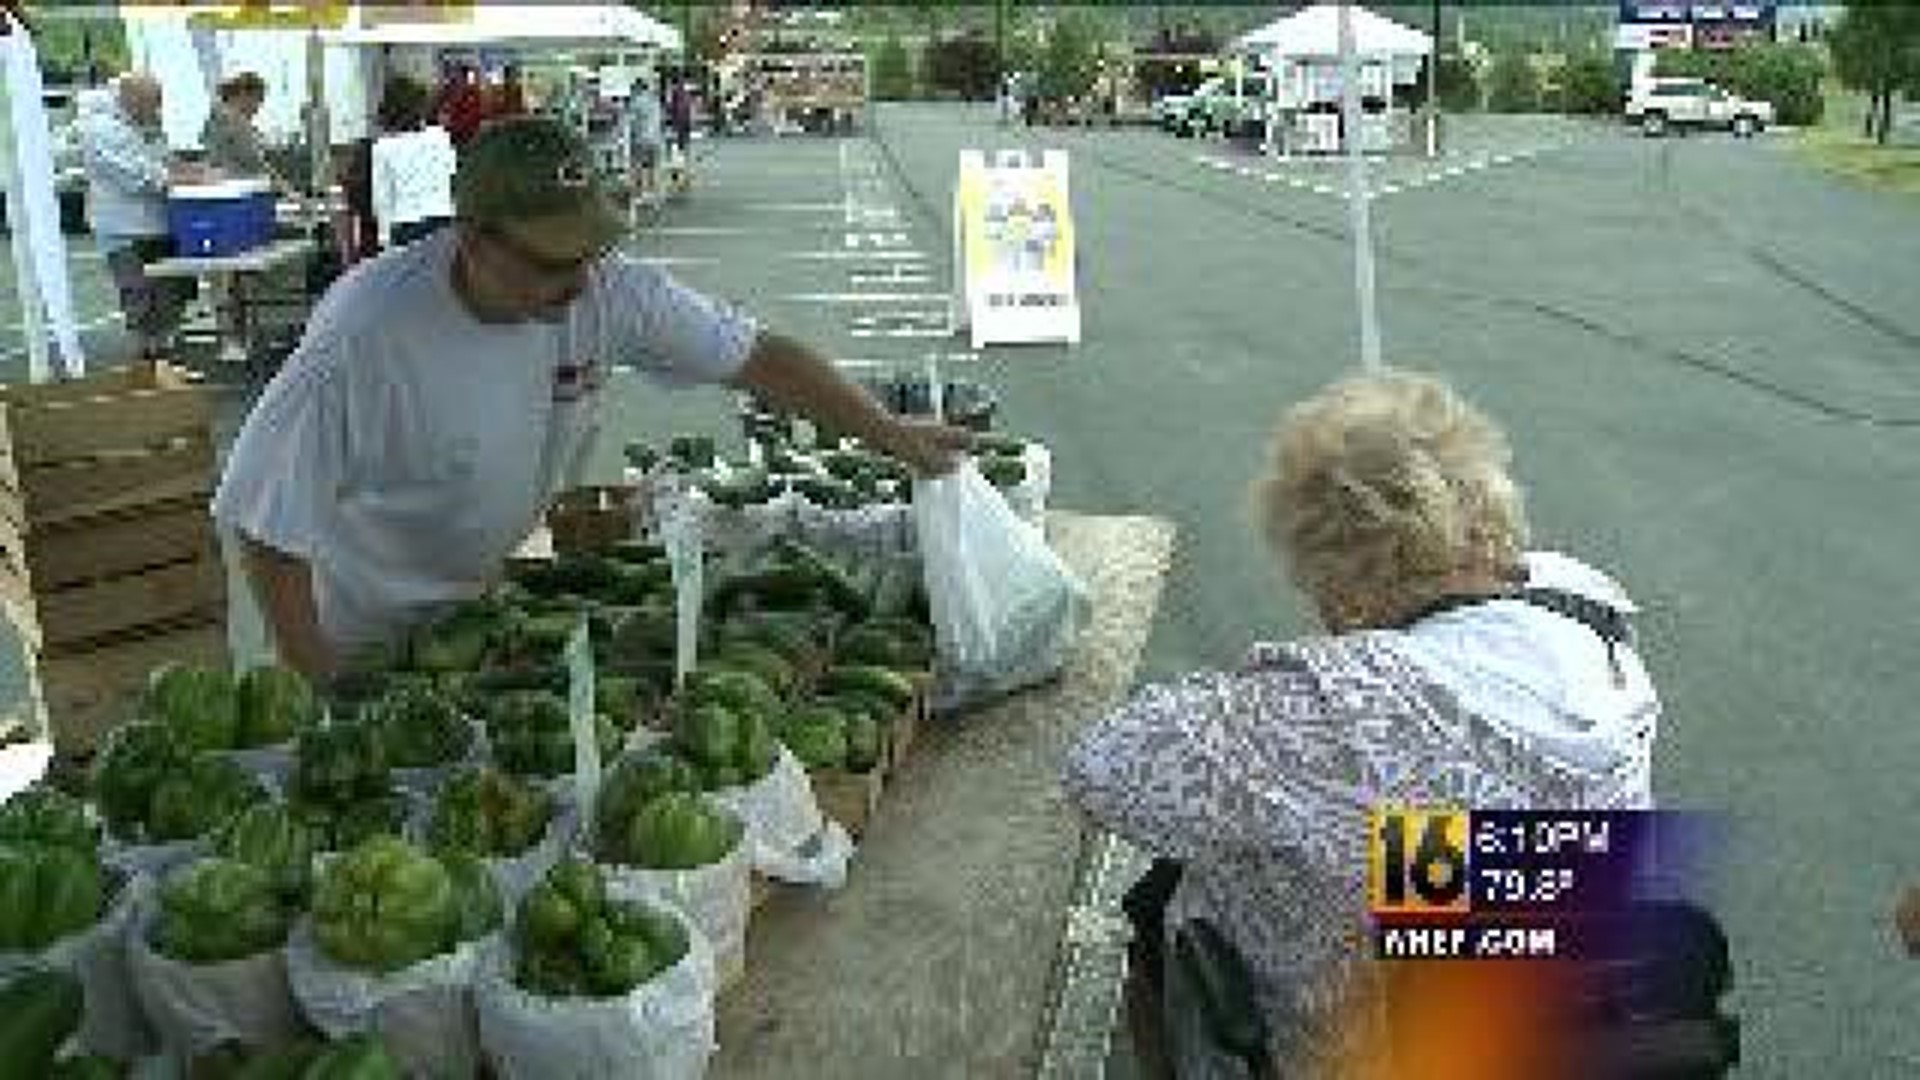 New Farmers Market Opens Near Wilkes-Barre